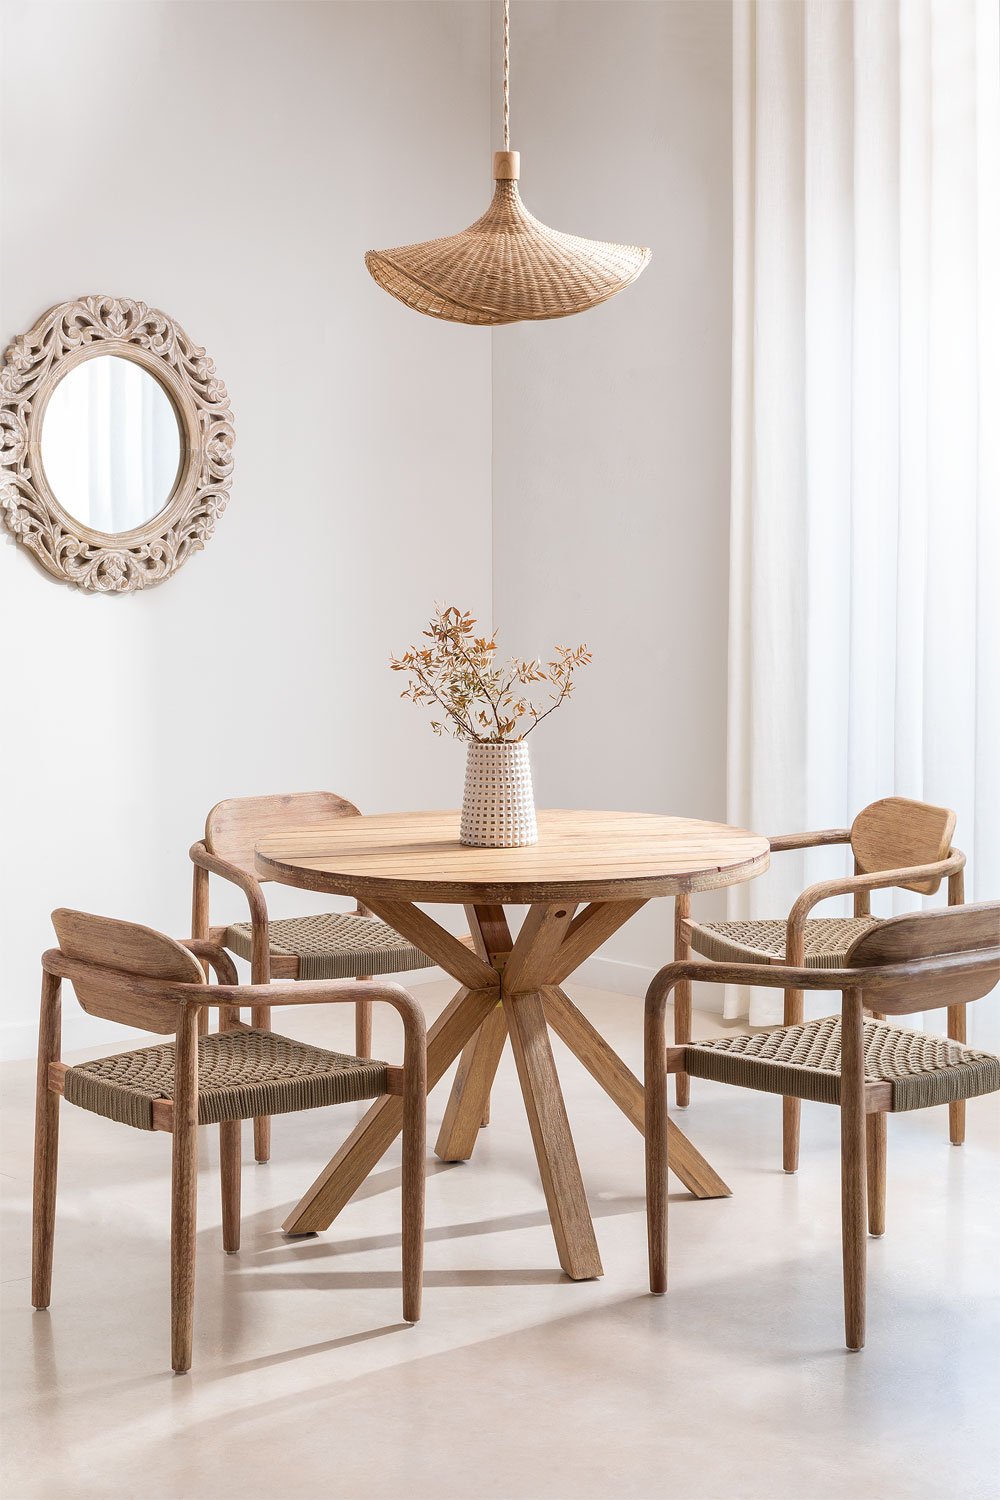 Set mit rundem Tisch (Ø 100 cm) und 4 Esszimmerstühle mit Armlehnen aus Holz Naele, Galeriebild 1